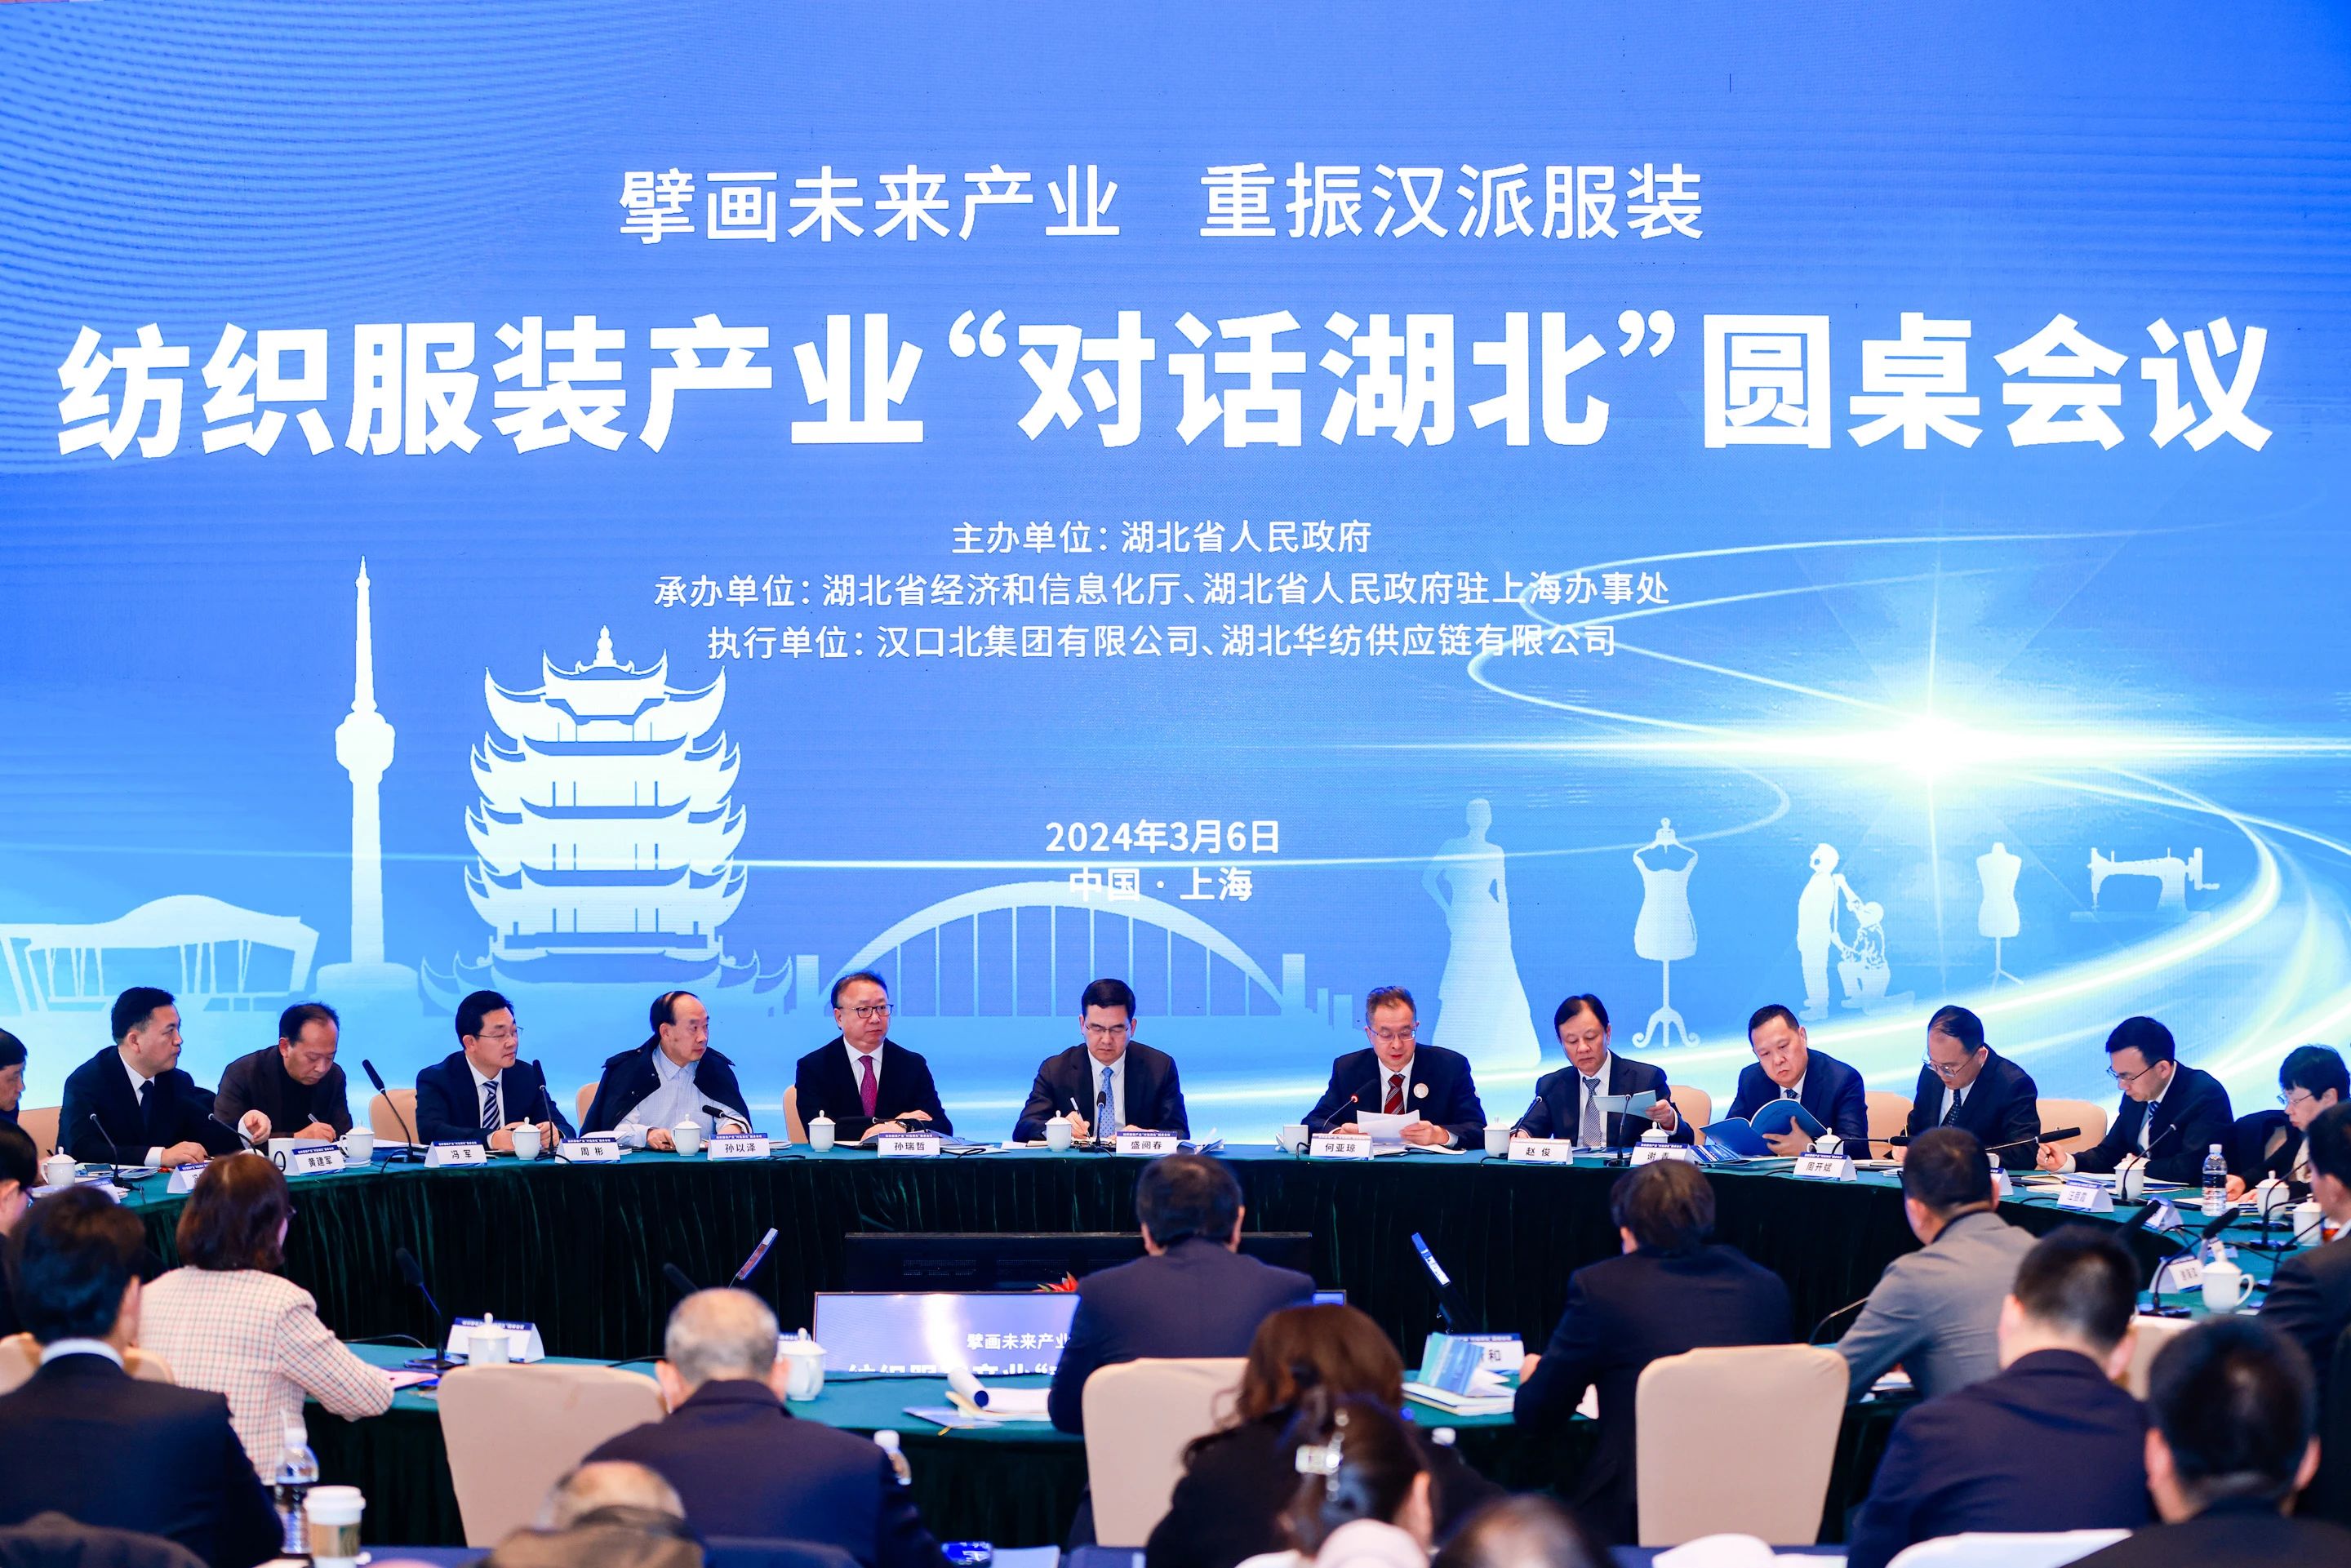 纺织服装产业“对话湖北”圆桌会议在上海举行，张润斌董事长受邀参会并发言